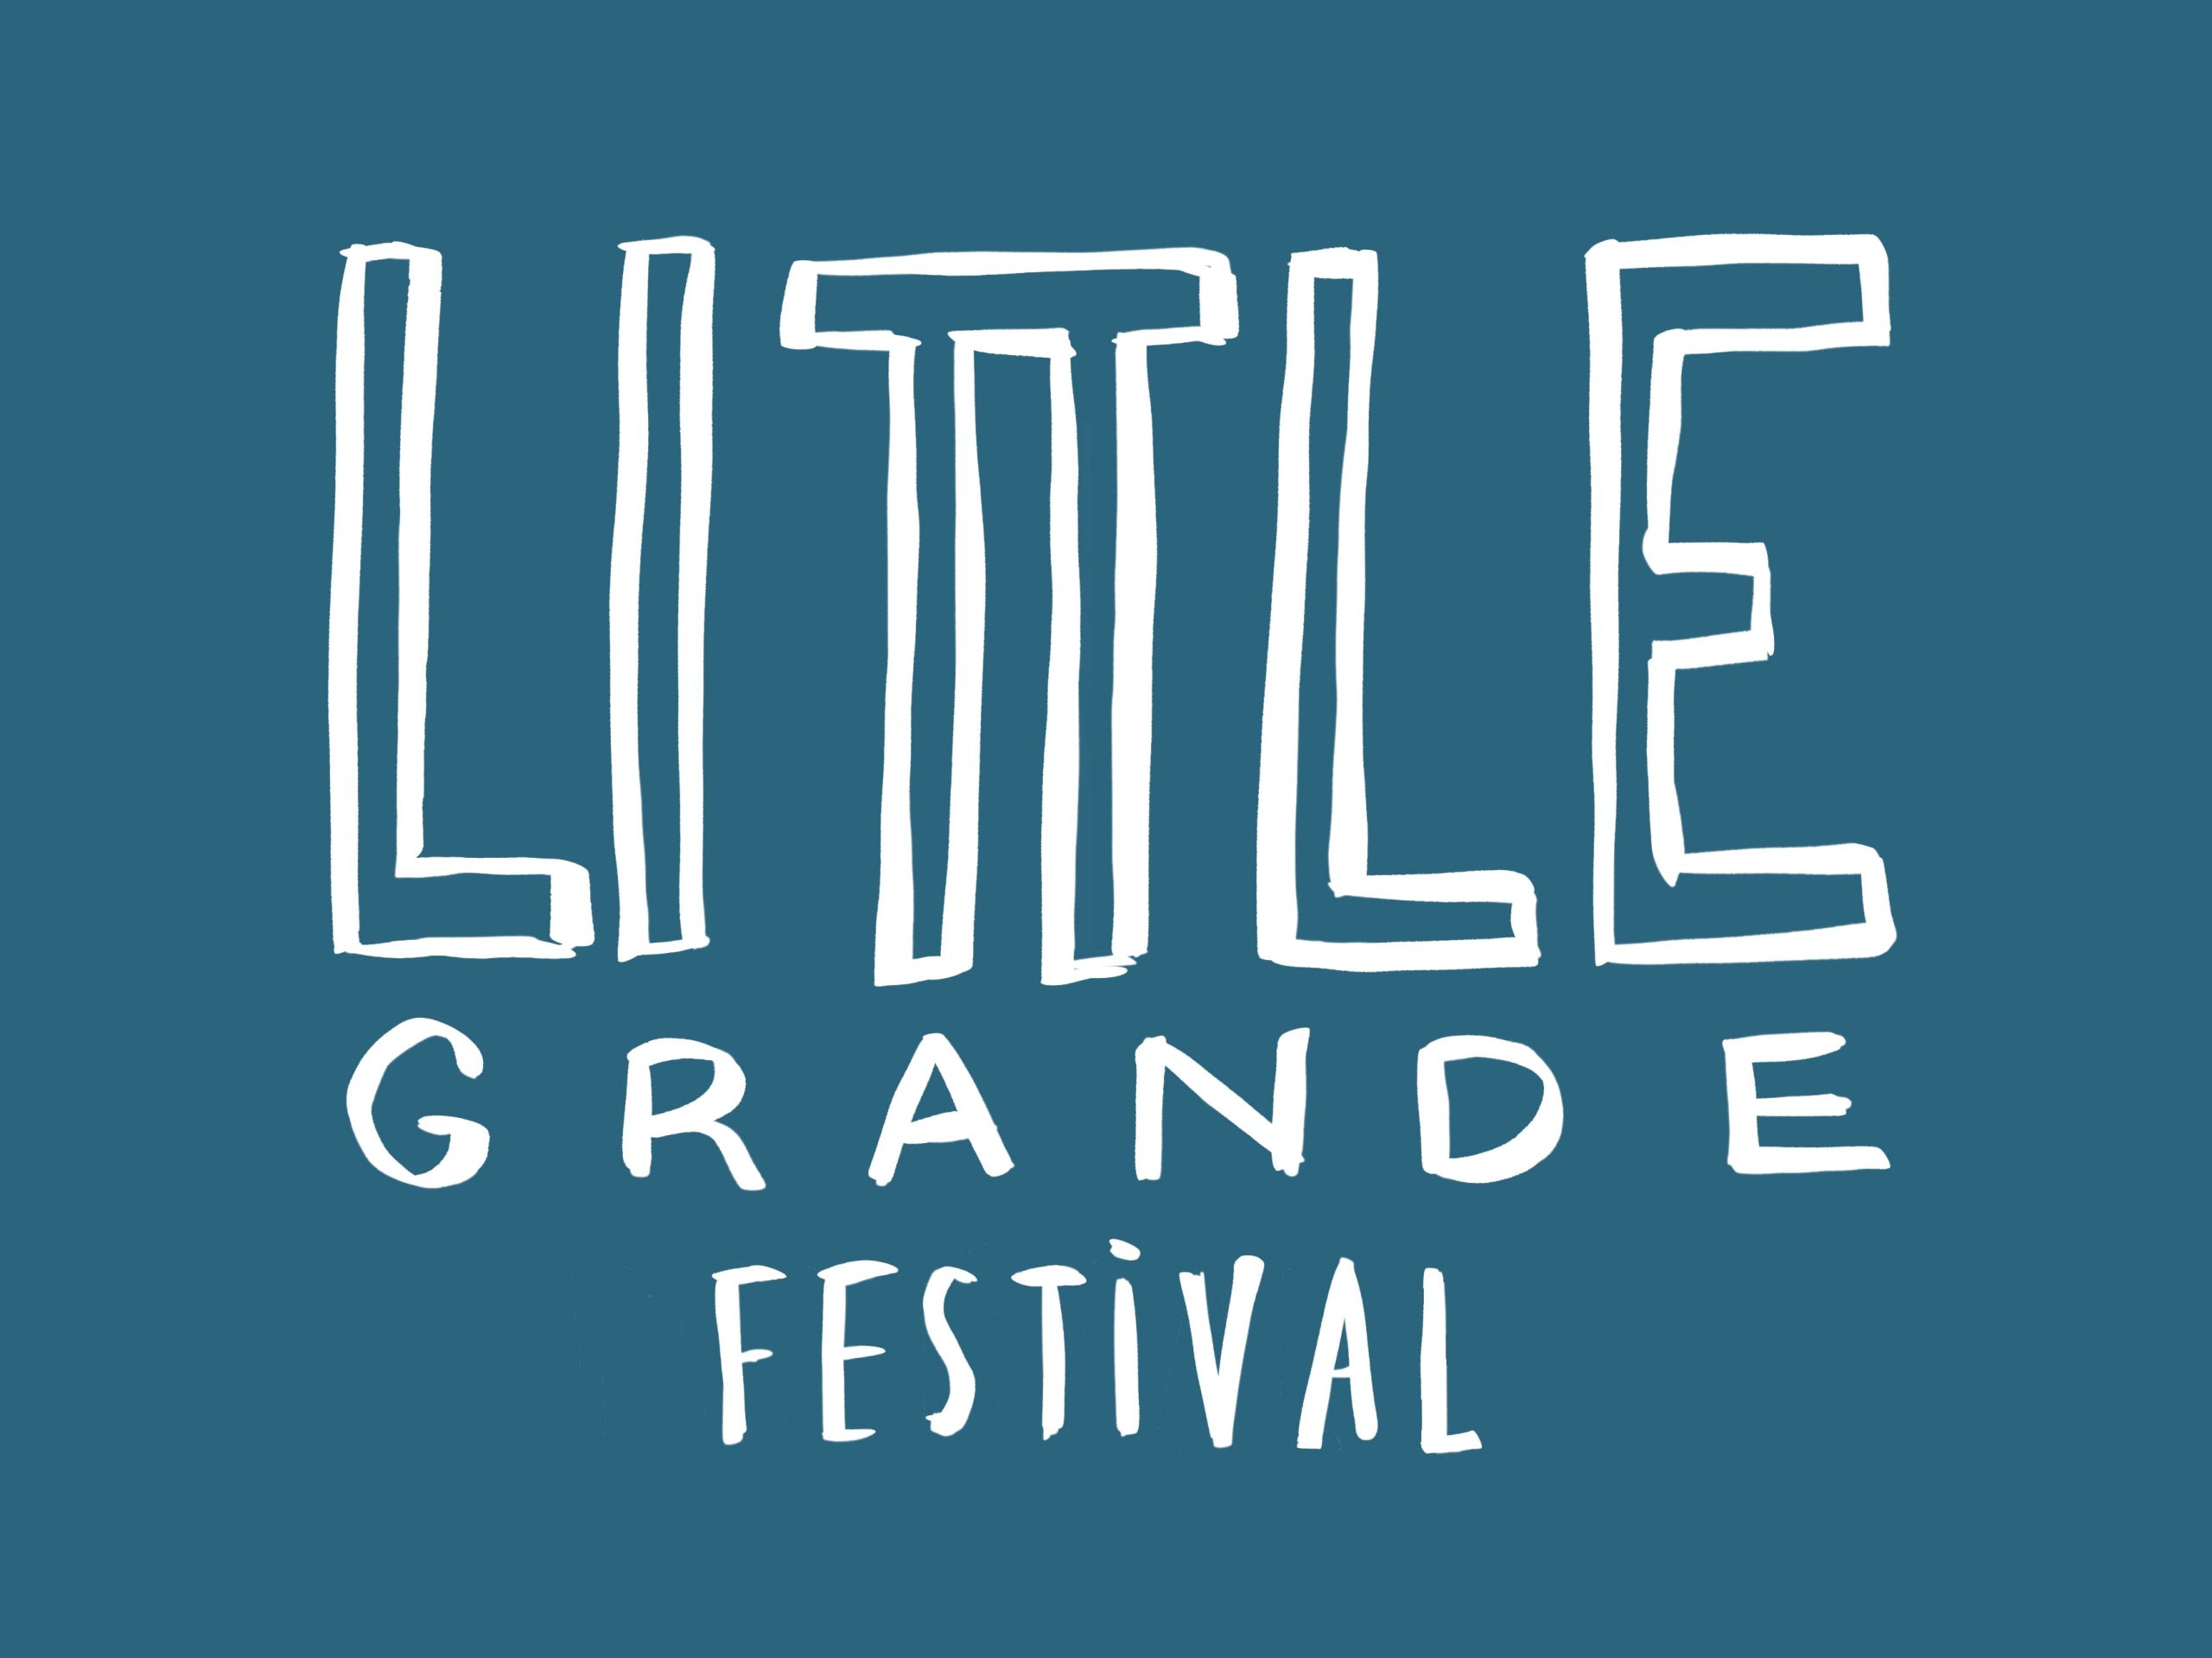 Little Grande Festival